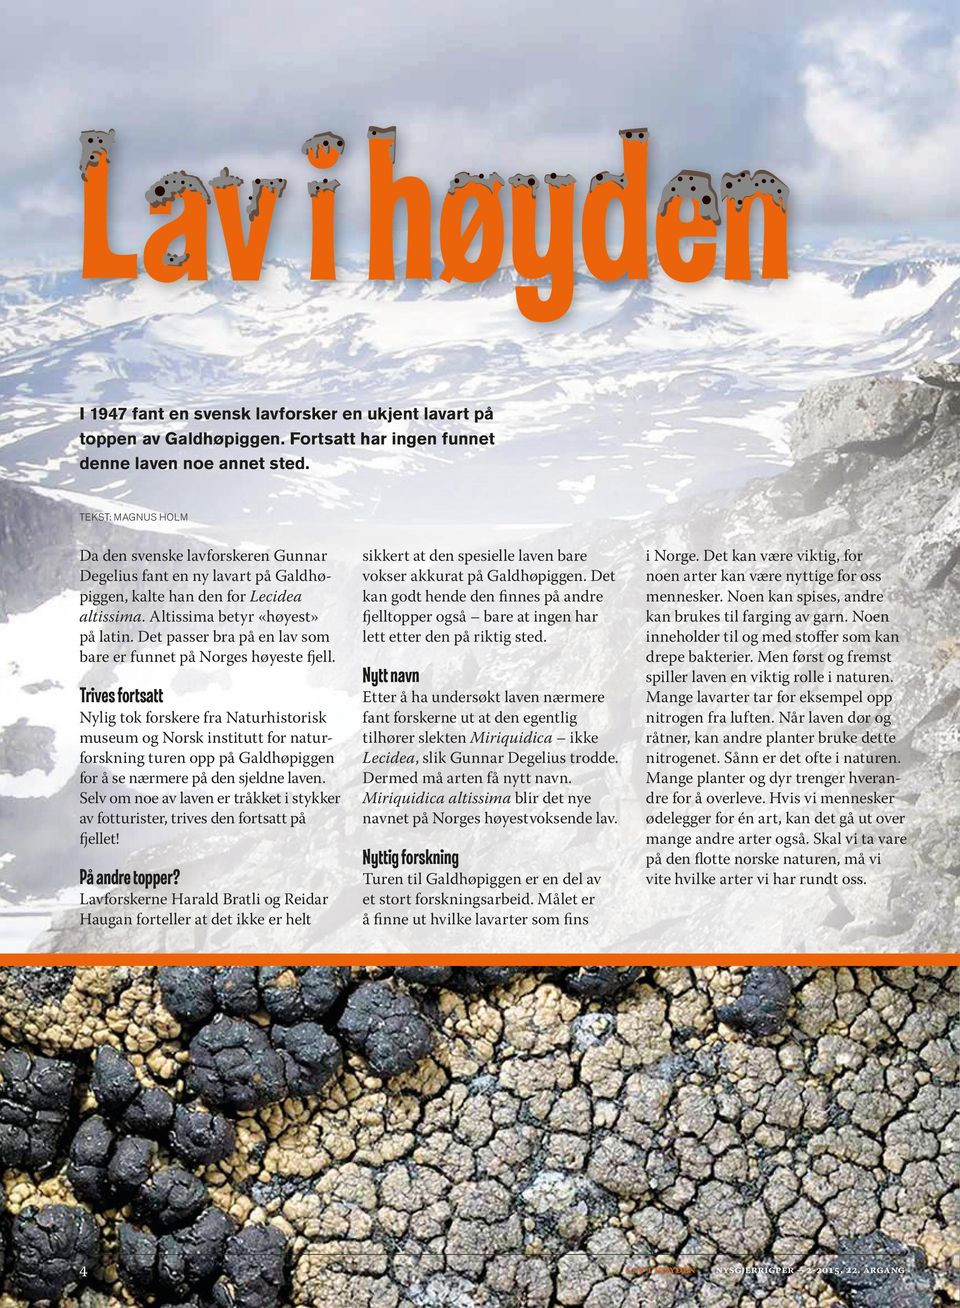 Det passer bra på en lav som bare er funnet på Norges høyeste fjell.